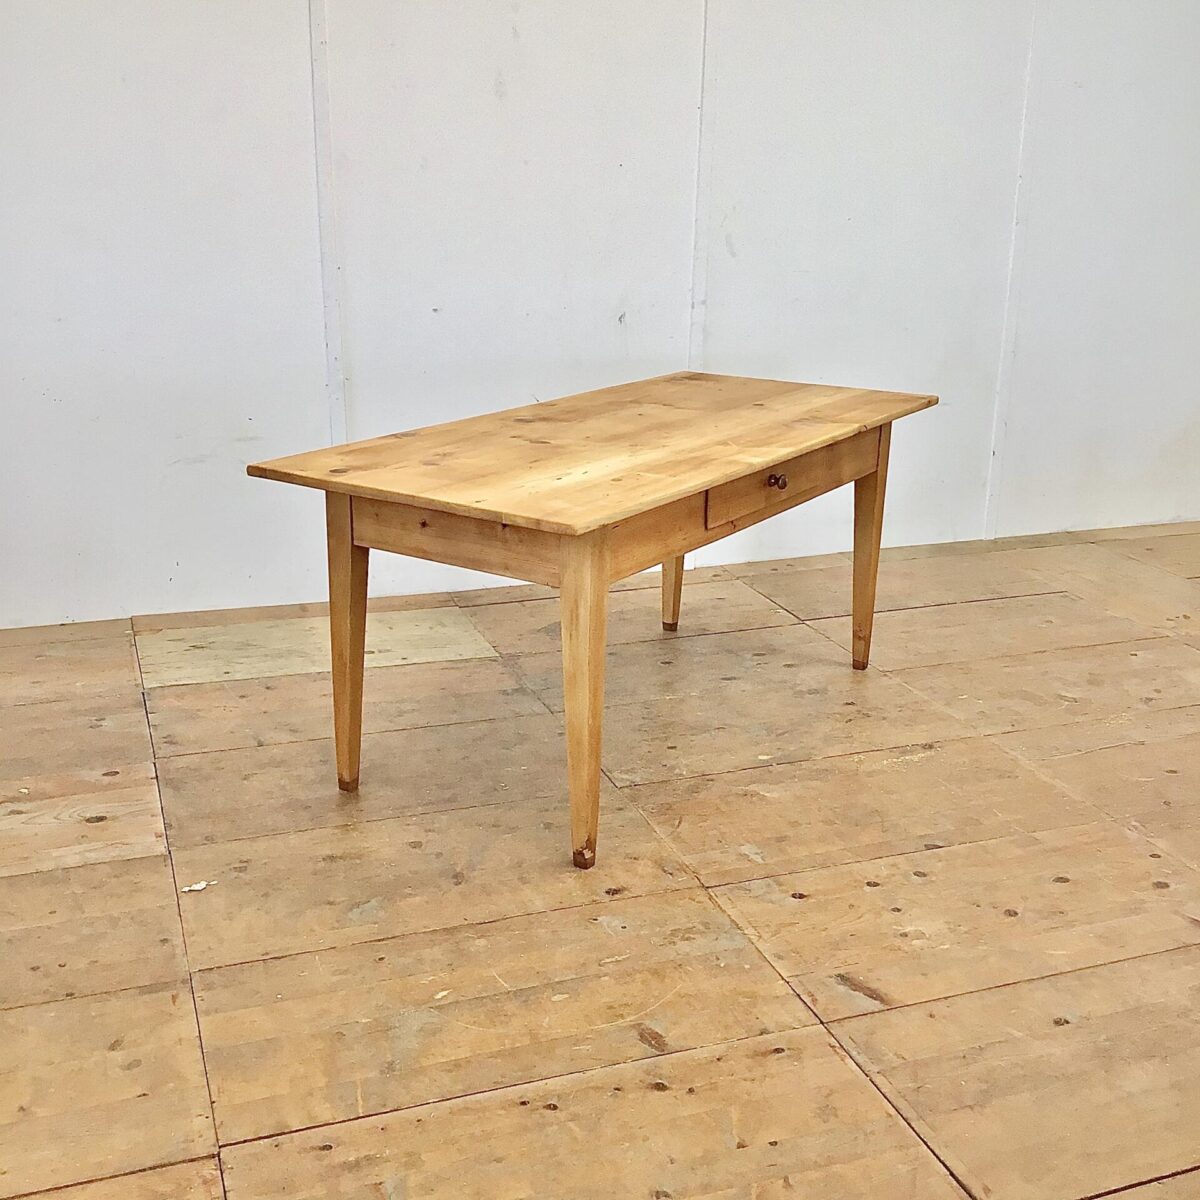 Tannenholztisch 182x83cm Höhe 78cm. Das Tischblatt ist teilweise etwas uneben. Die Beine wurden mal etwas verlängert um die Beinfreiheit zu vergrössern. Die Holz Oberflächen sind geölt, warme matte Ausstrahlung. An der einen Längsseite hat es eine Besteck Schublade, mit Holzgriff. 